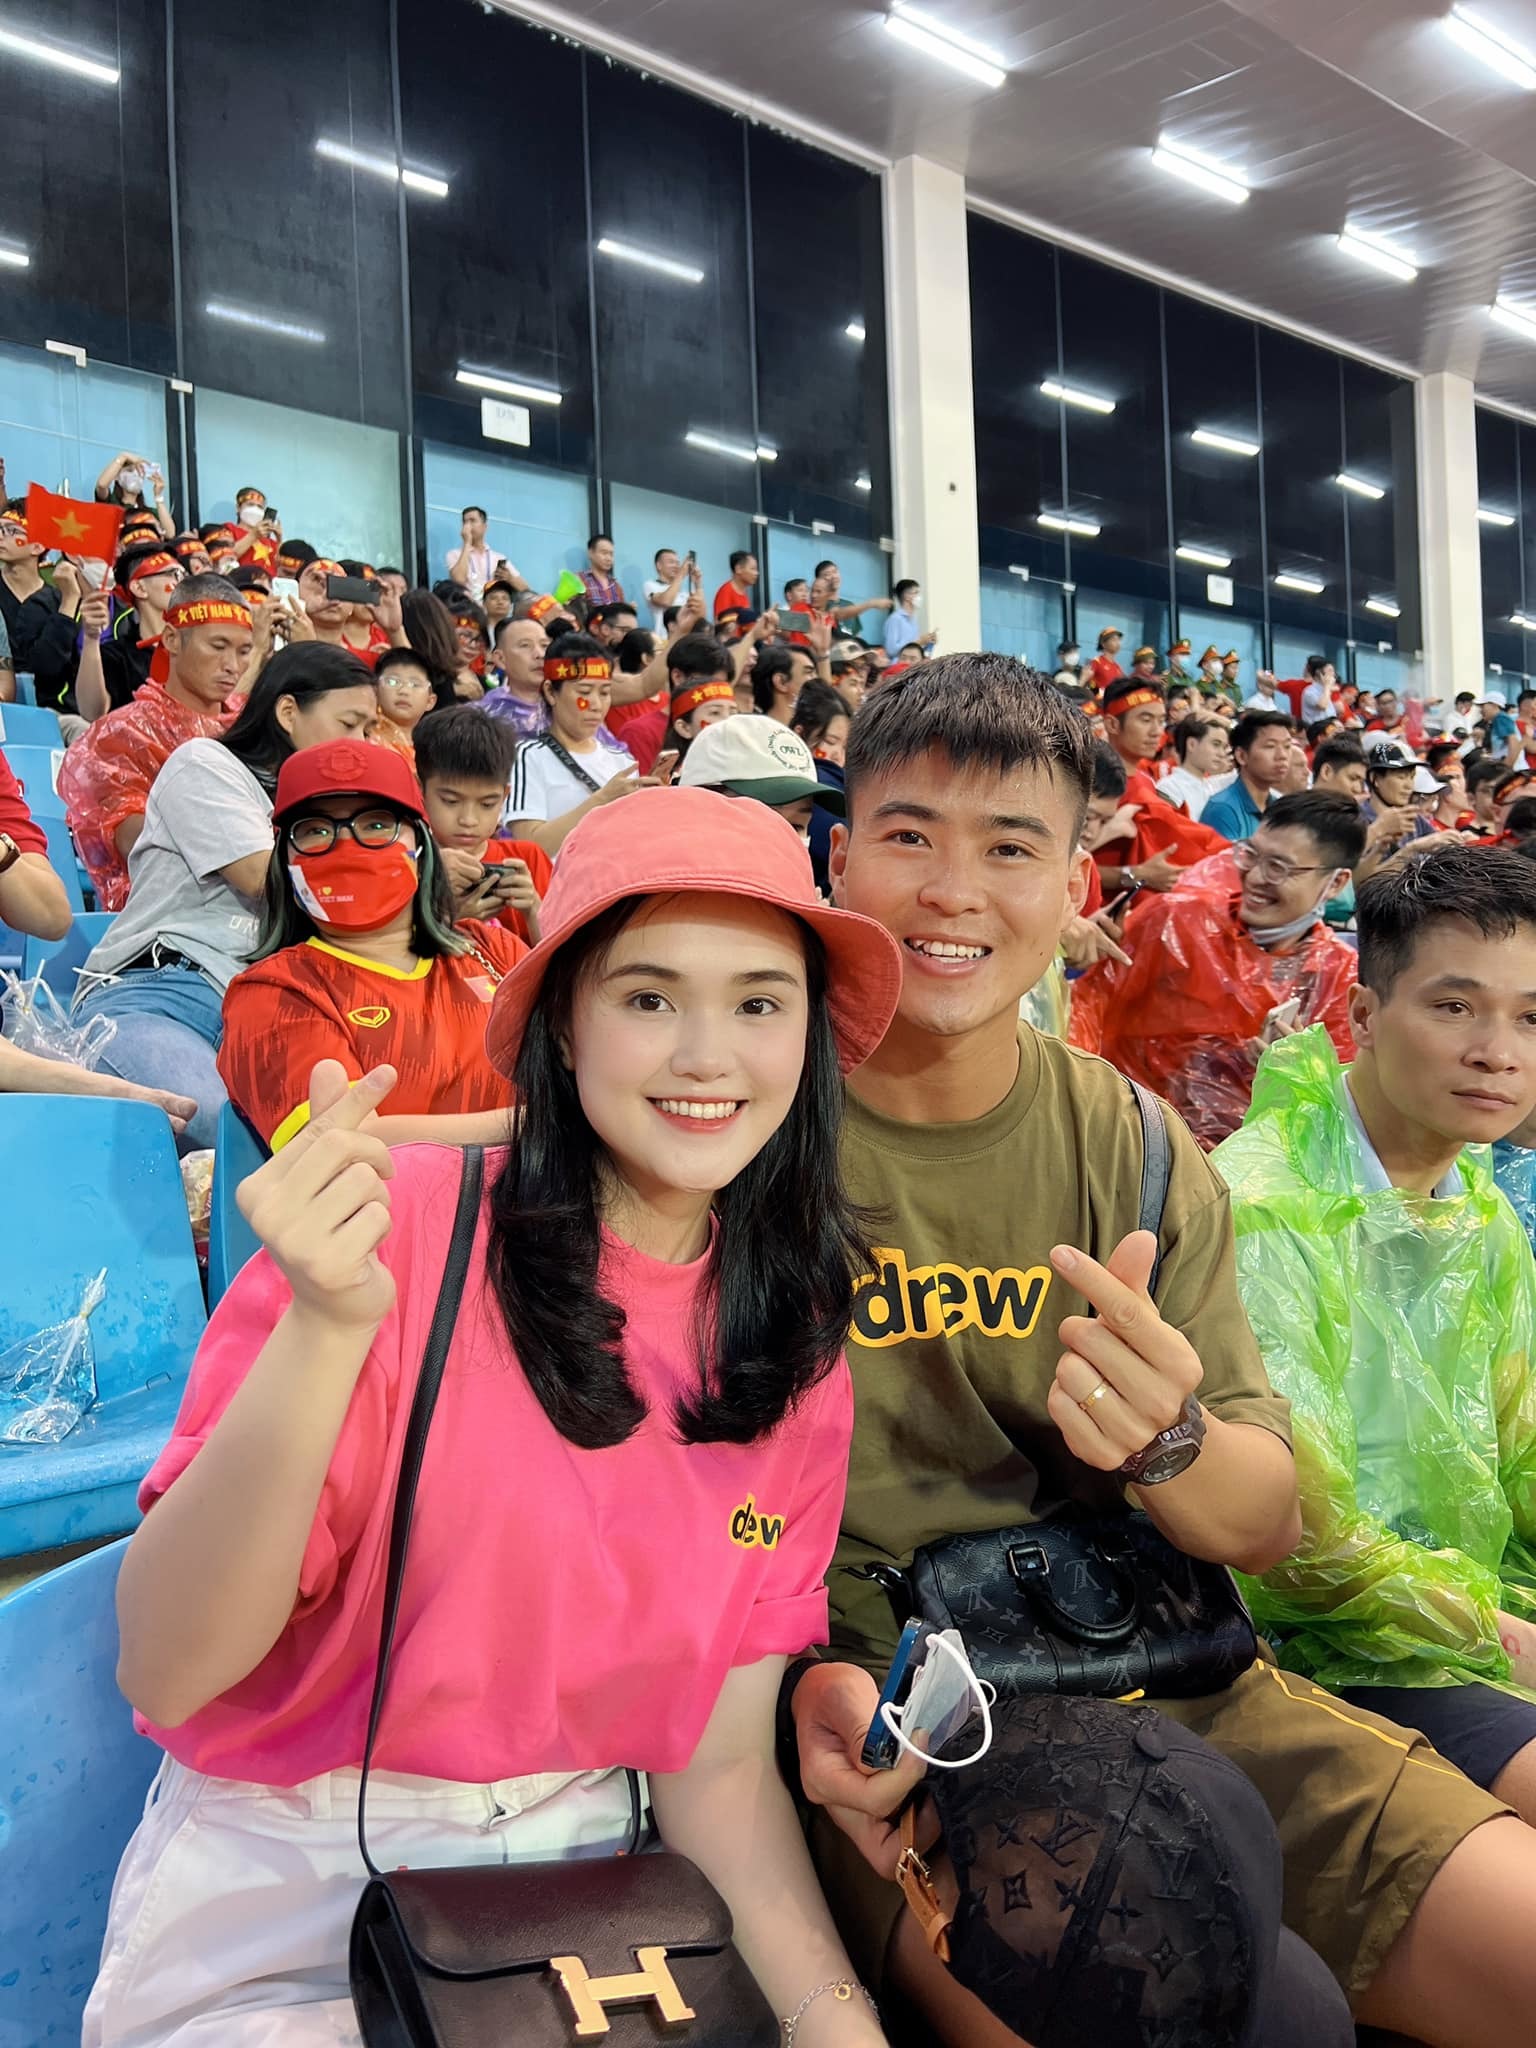 Bà xã Quỳnh Anh quyết ‘đi bão’ 6 ngày 6 đêm mừng HCV SEA Games 31, Duy Mạnh tuyên bố 1 câu dứt khoát!